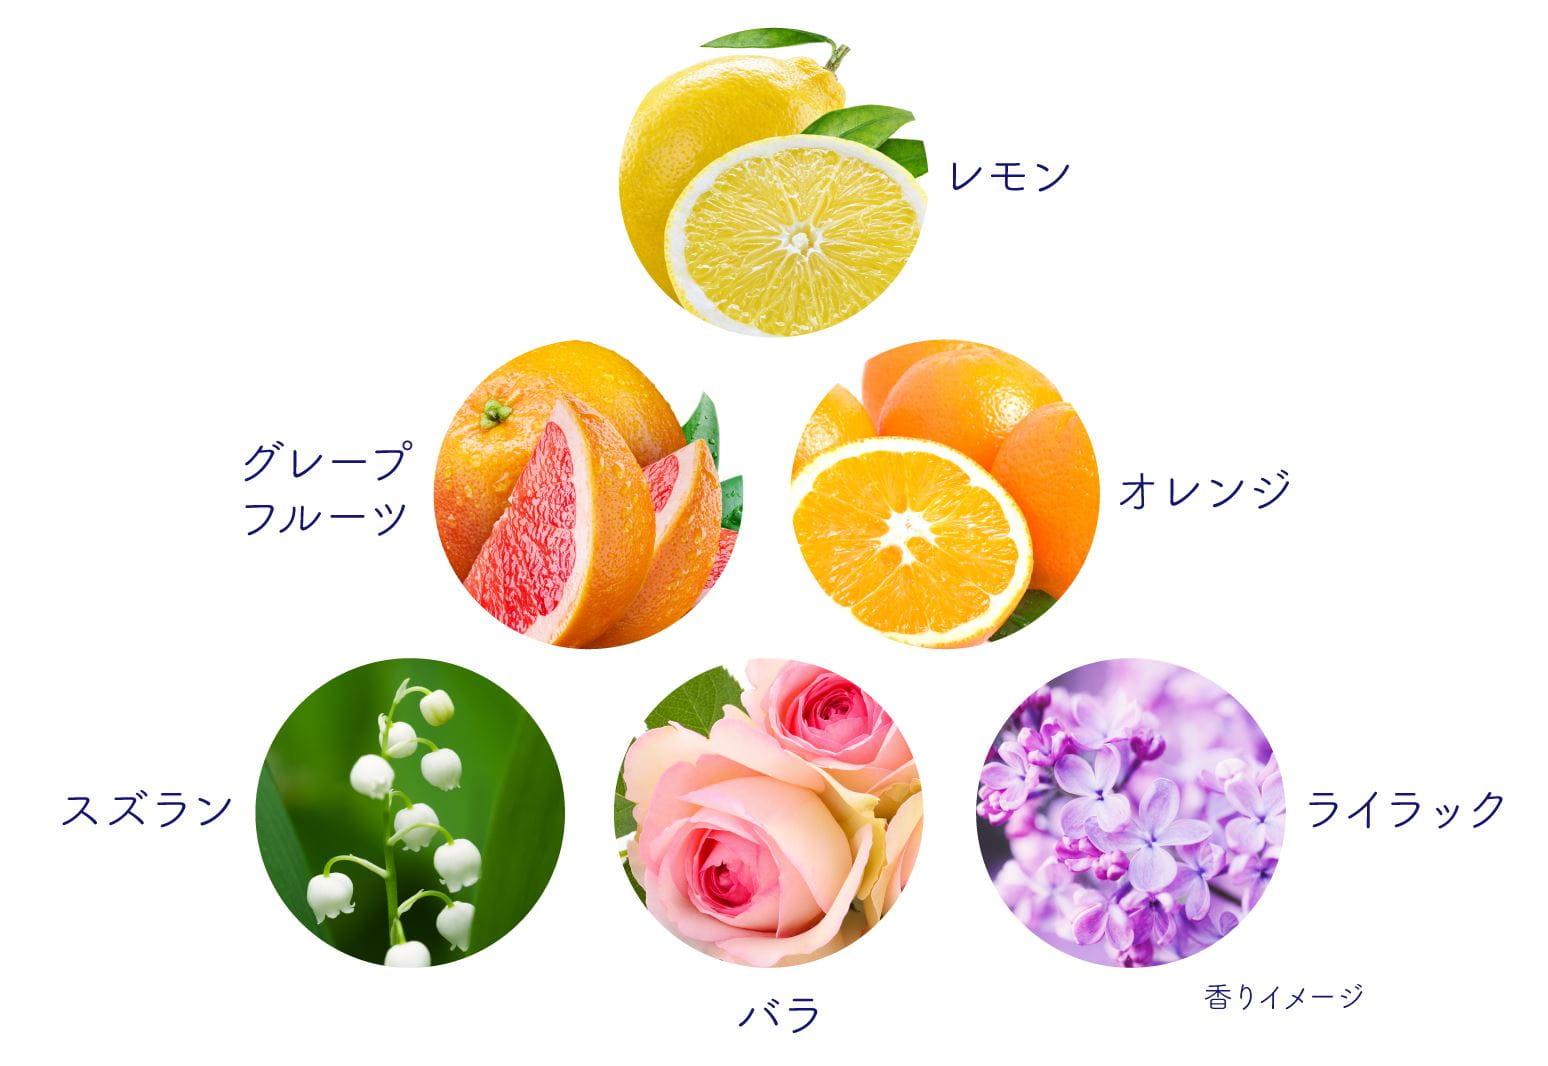 香りのイメージとなる草花の図。レモン、グレープフルーツ、オレンジ、スズラン、バラ、ライラックをイメージ。